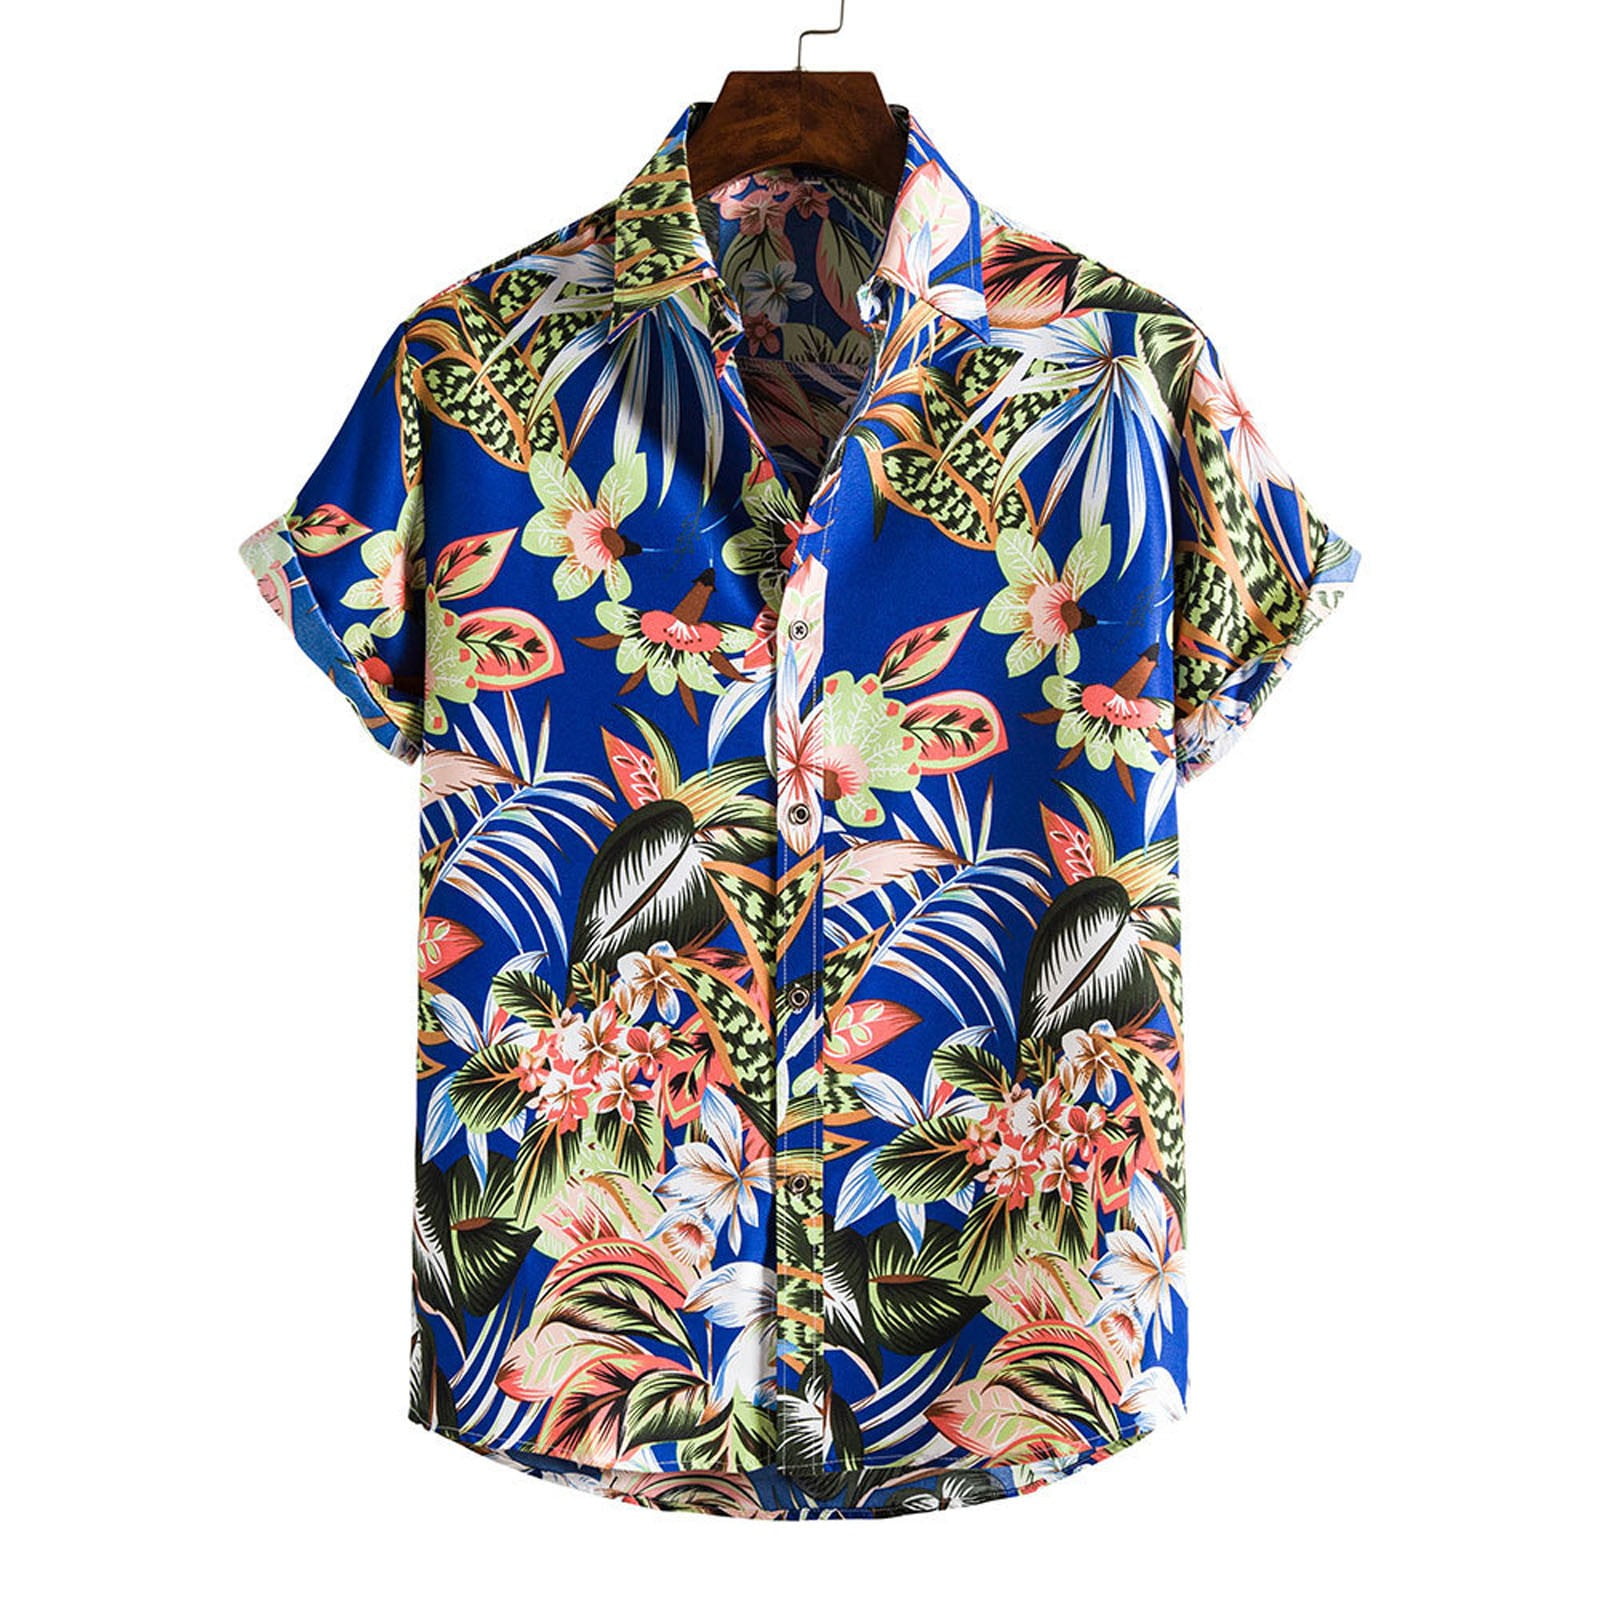 Mens T Shirts,Men's Hawaiian Shirt Short Sleeves Printed Button Down ...